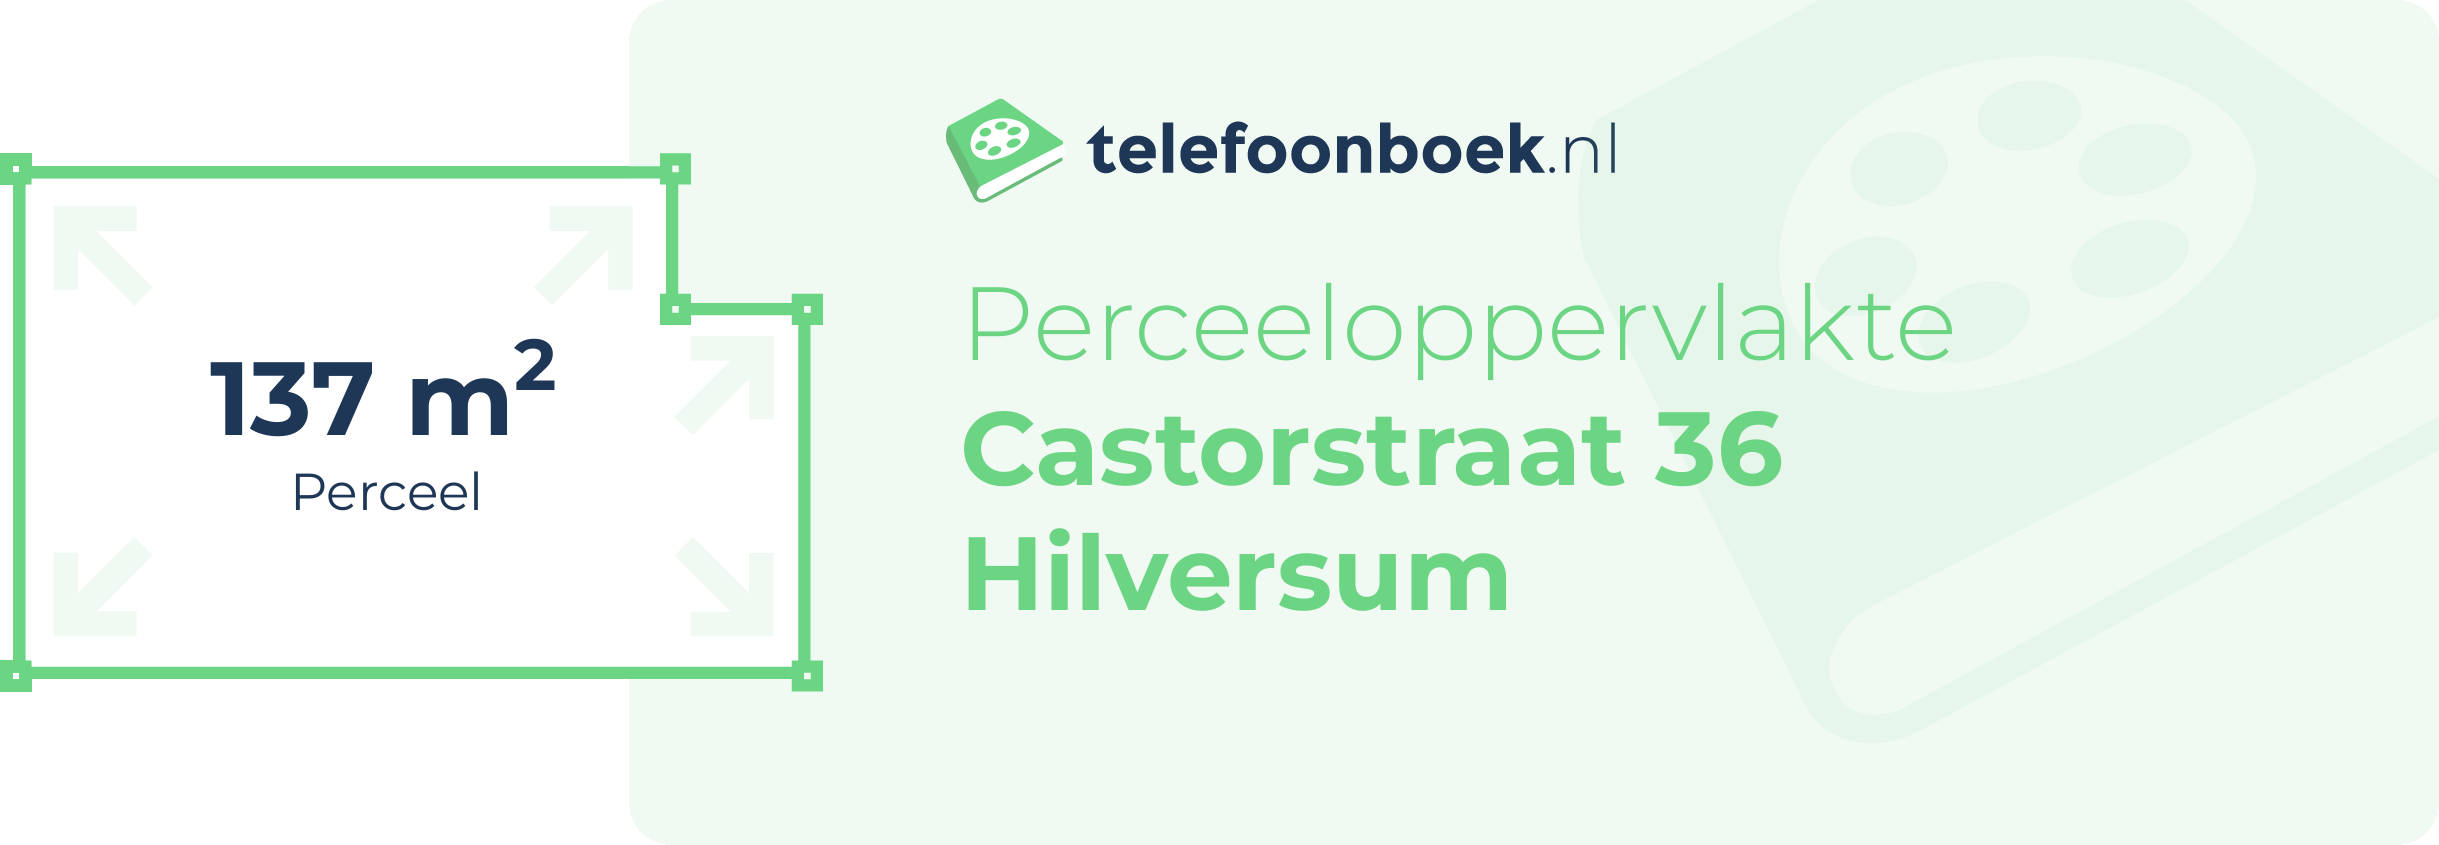 Perceeloppervlakte Castorstraat 36 Hilversum